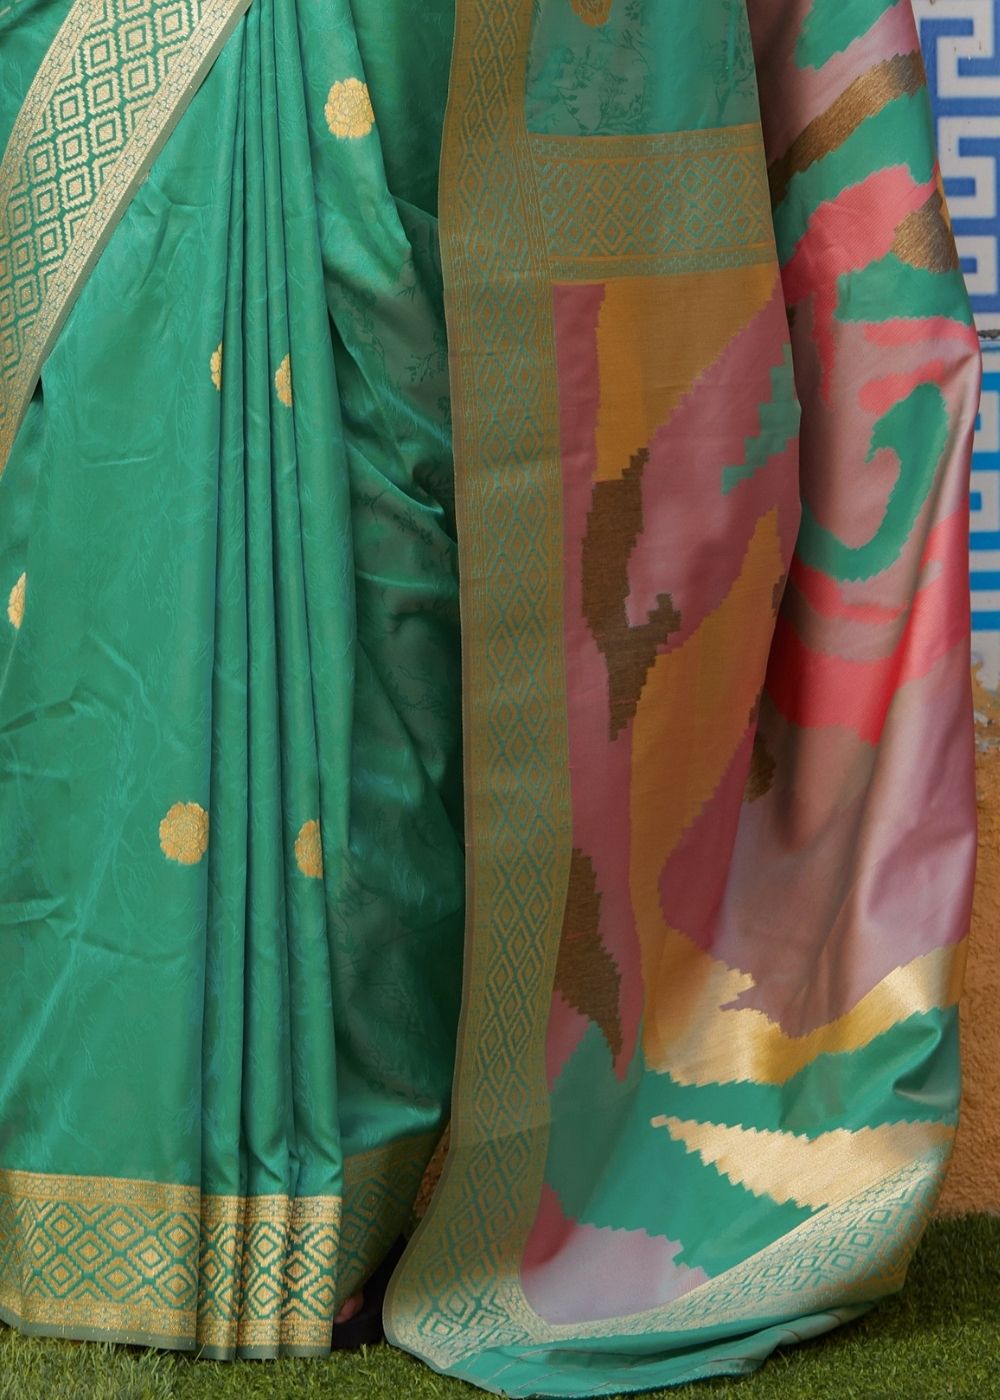 Mint Green Silk Saree with Zari Border and Abstract Digital Print on Pallu